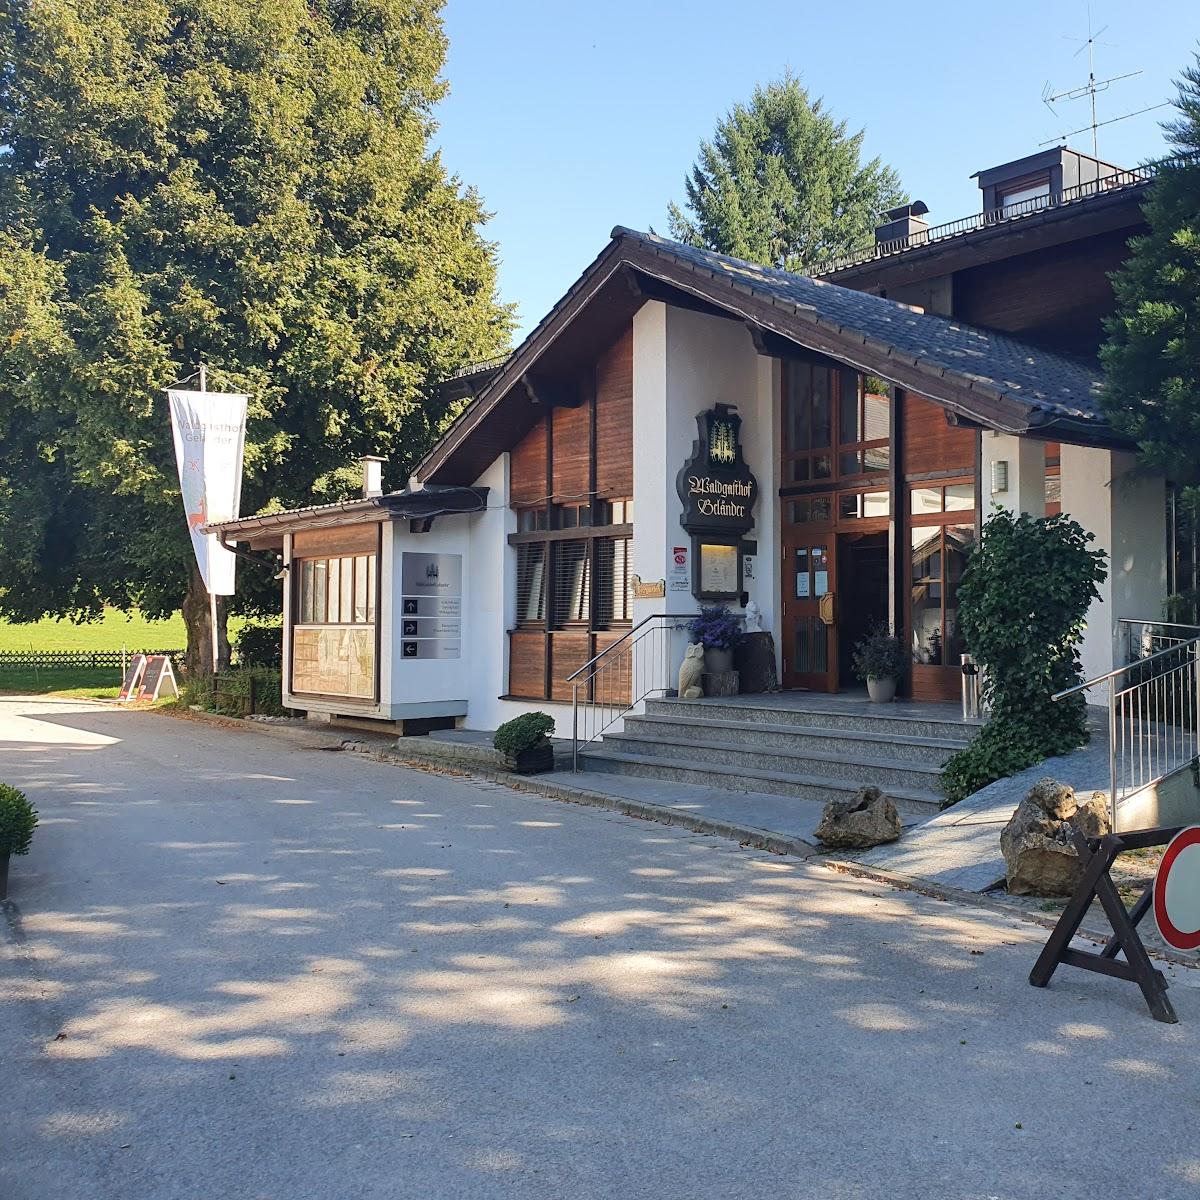 Restaurant "Waldgasthof zum Geländer" in Schernfeld